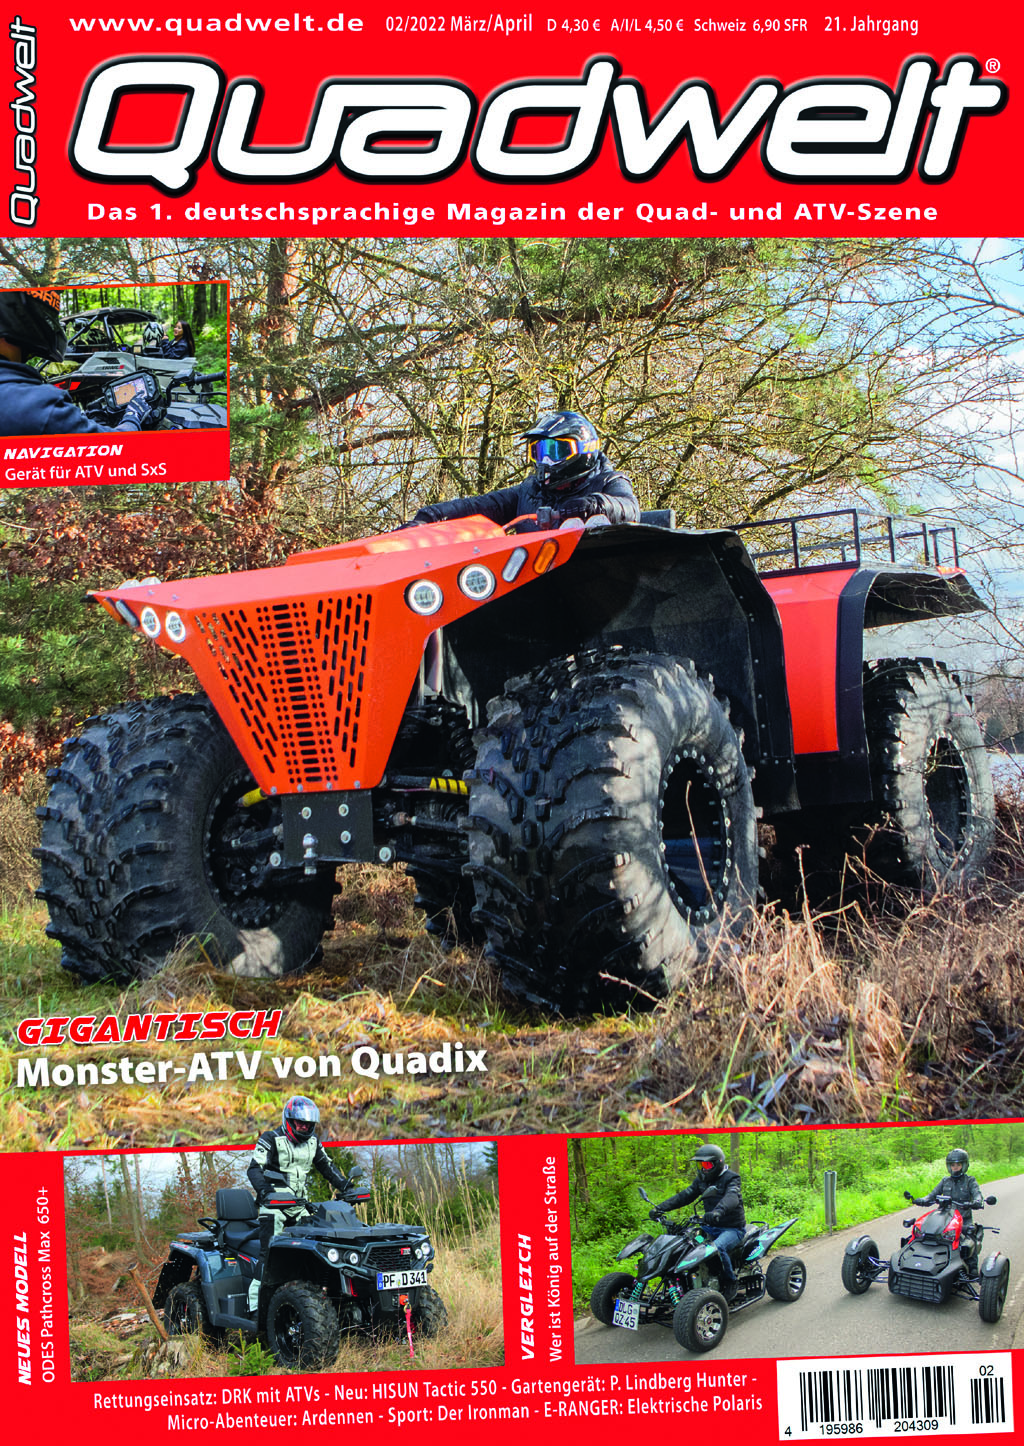 SMC QUAD / ATV, Motax GmbH